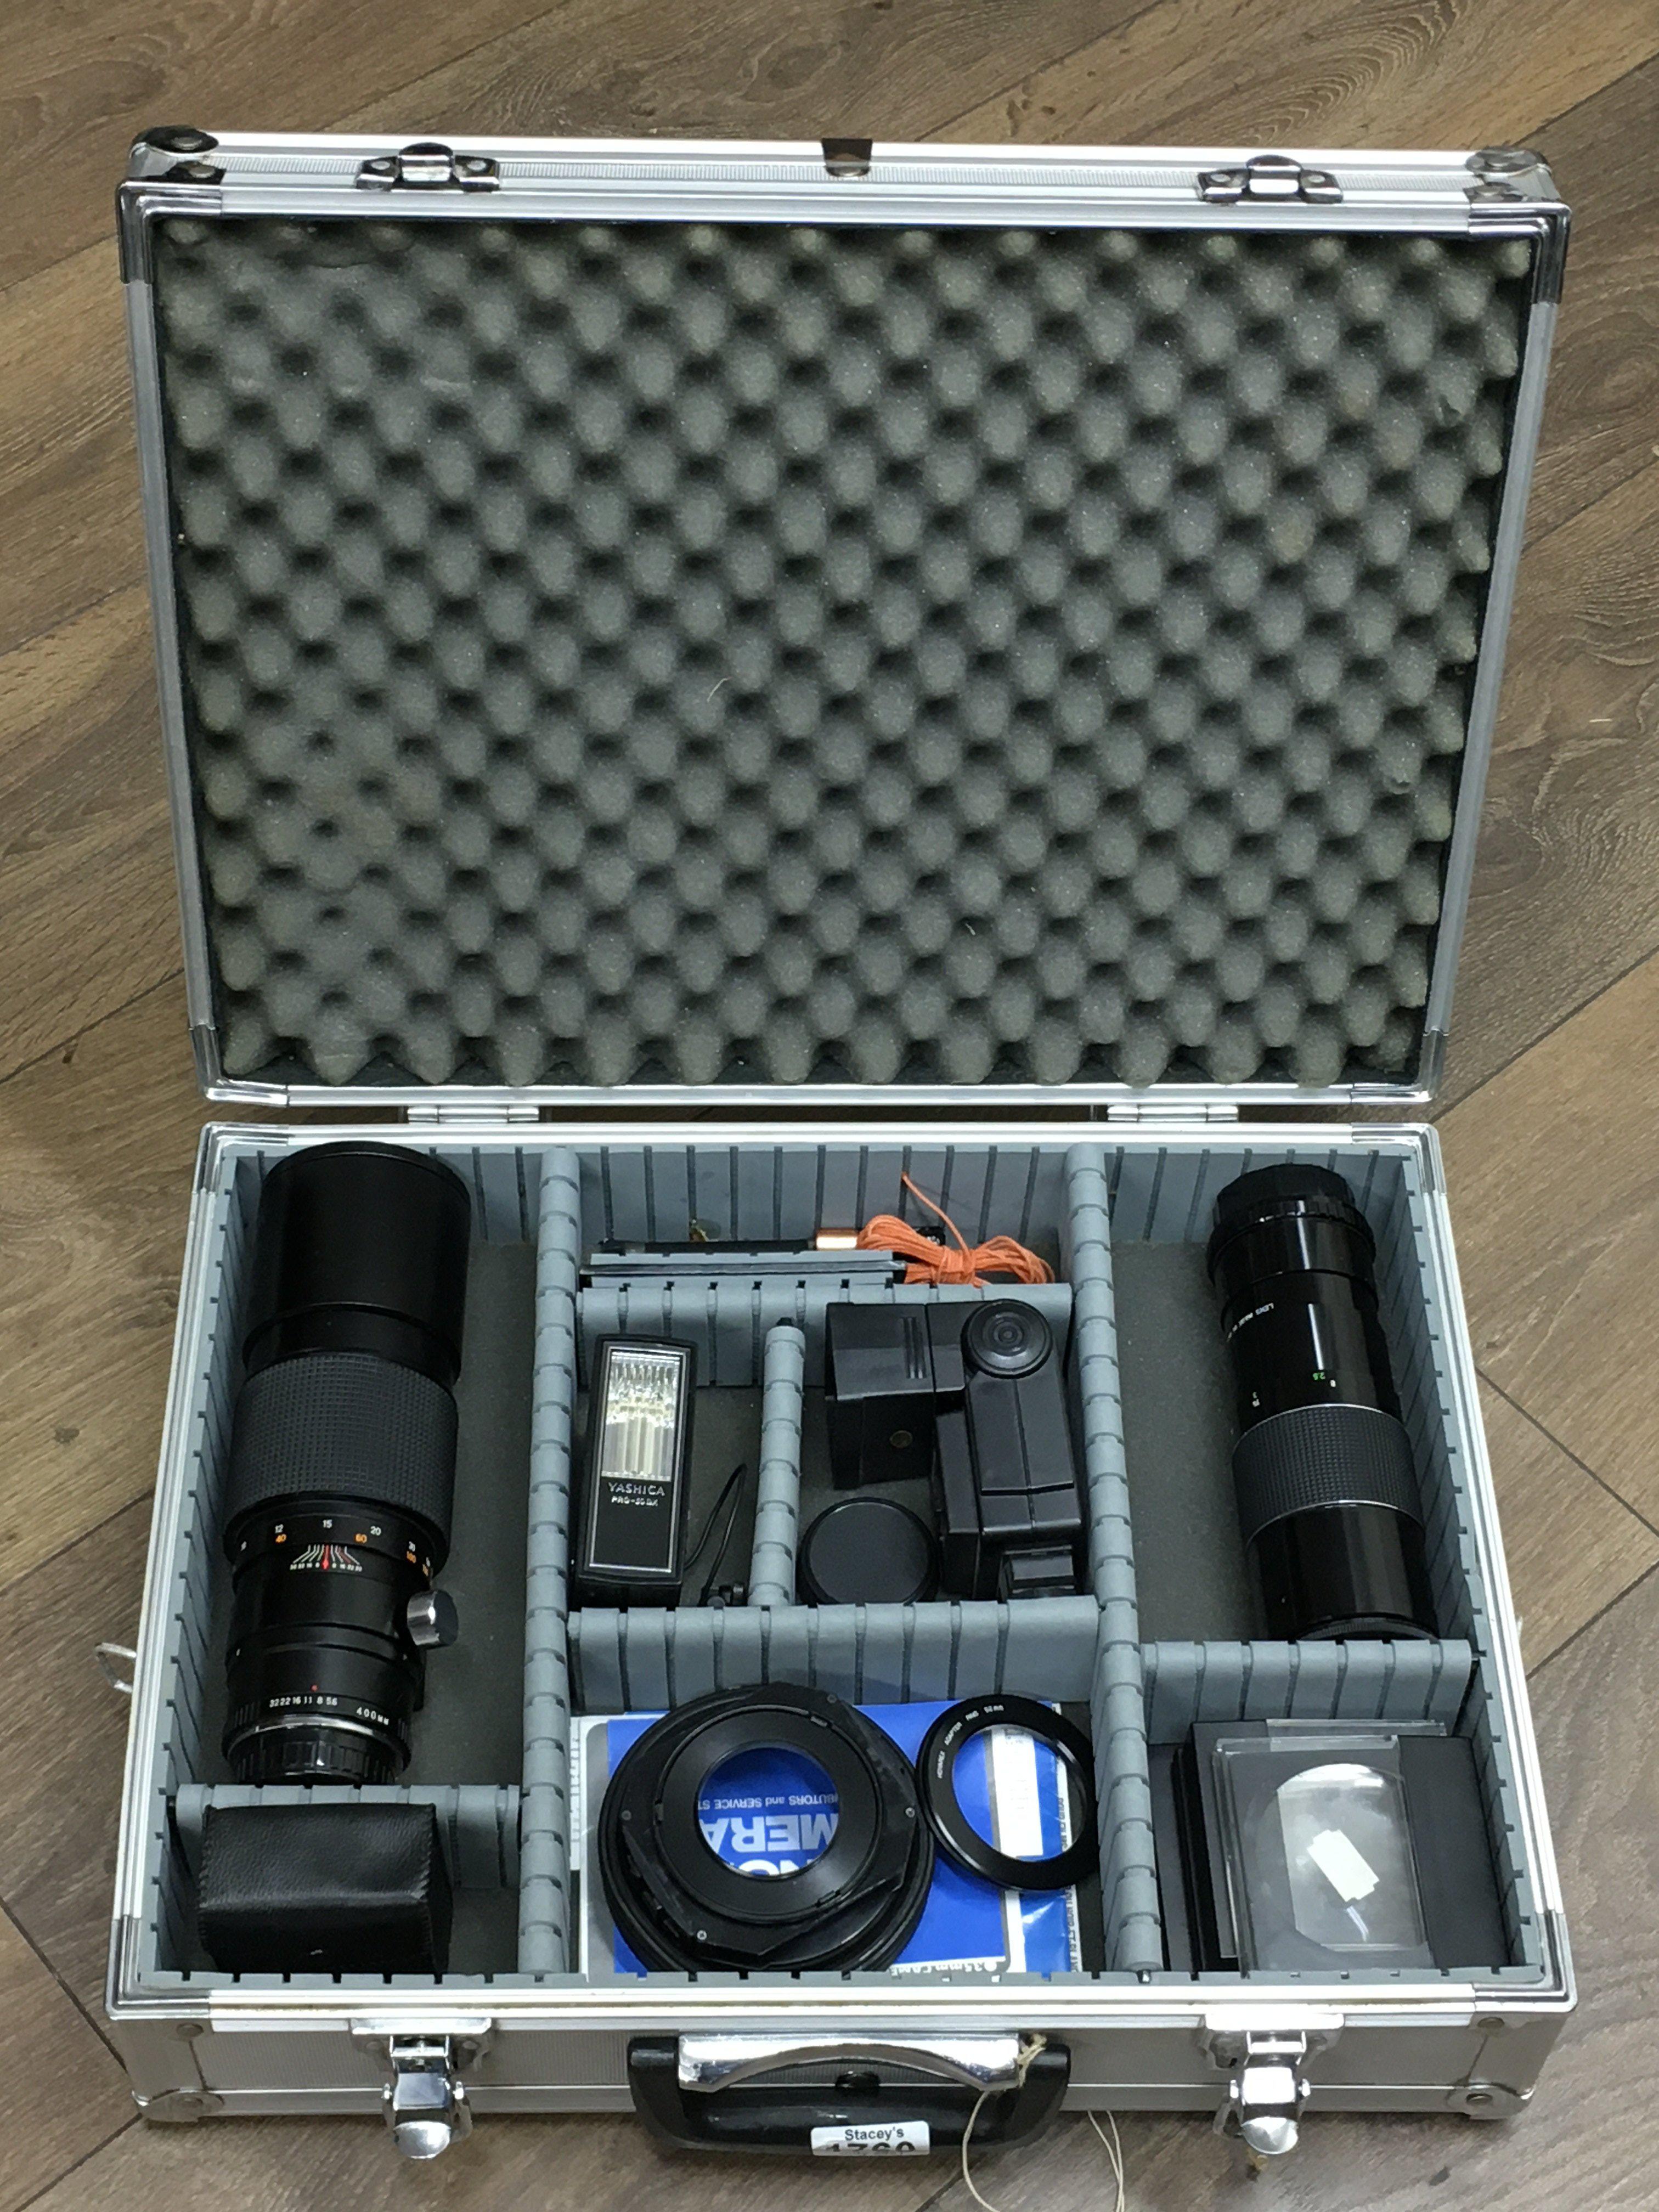 A case containing camera equipment including lense